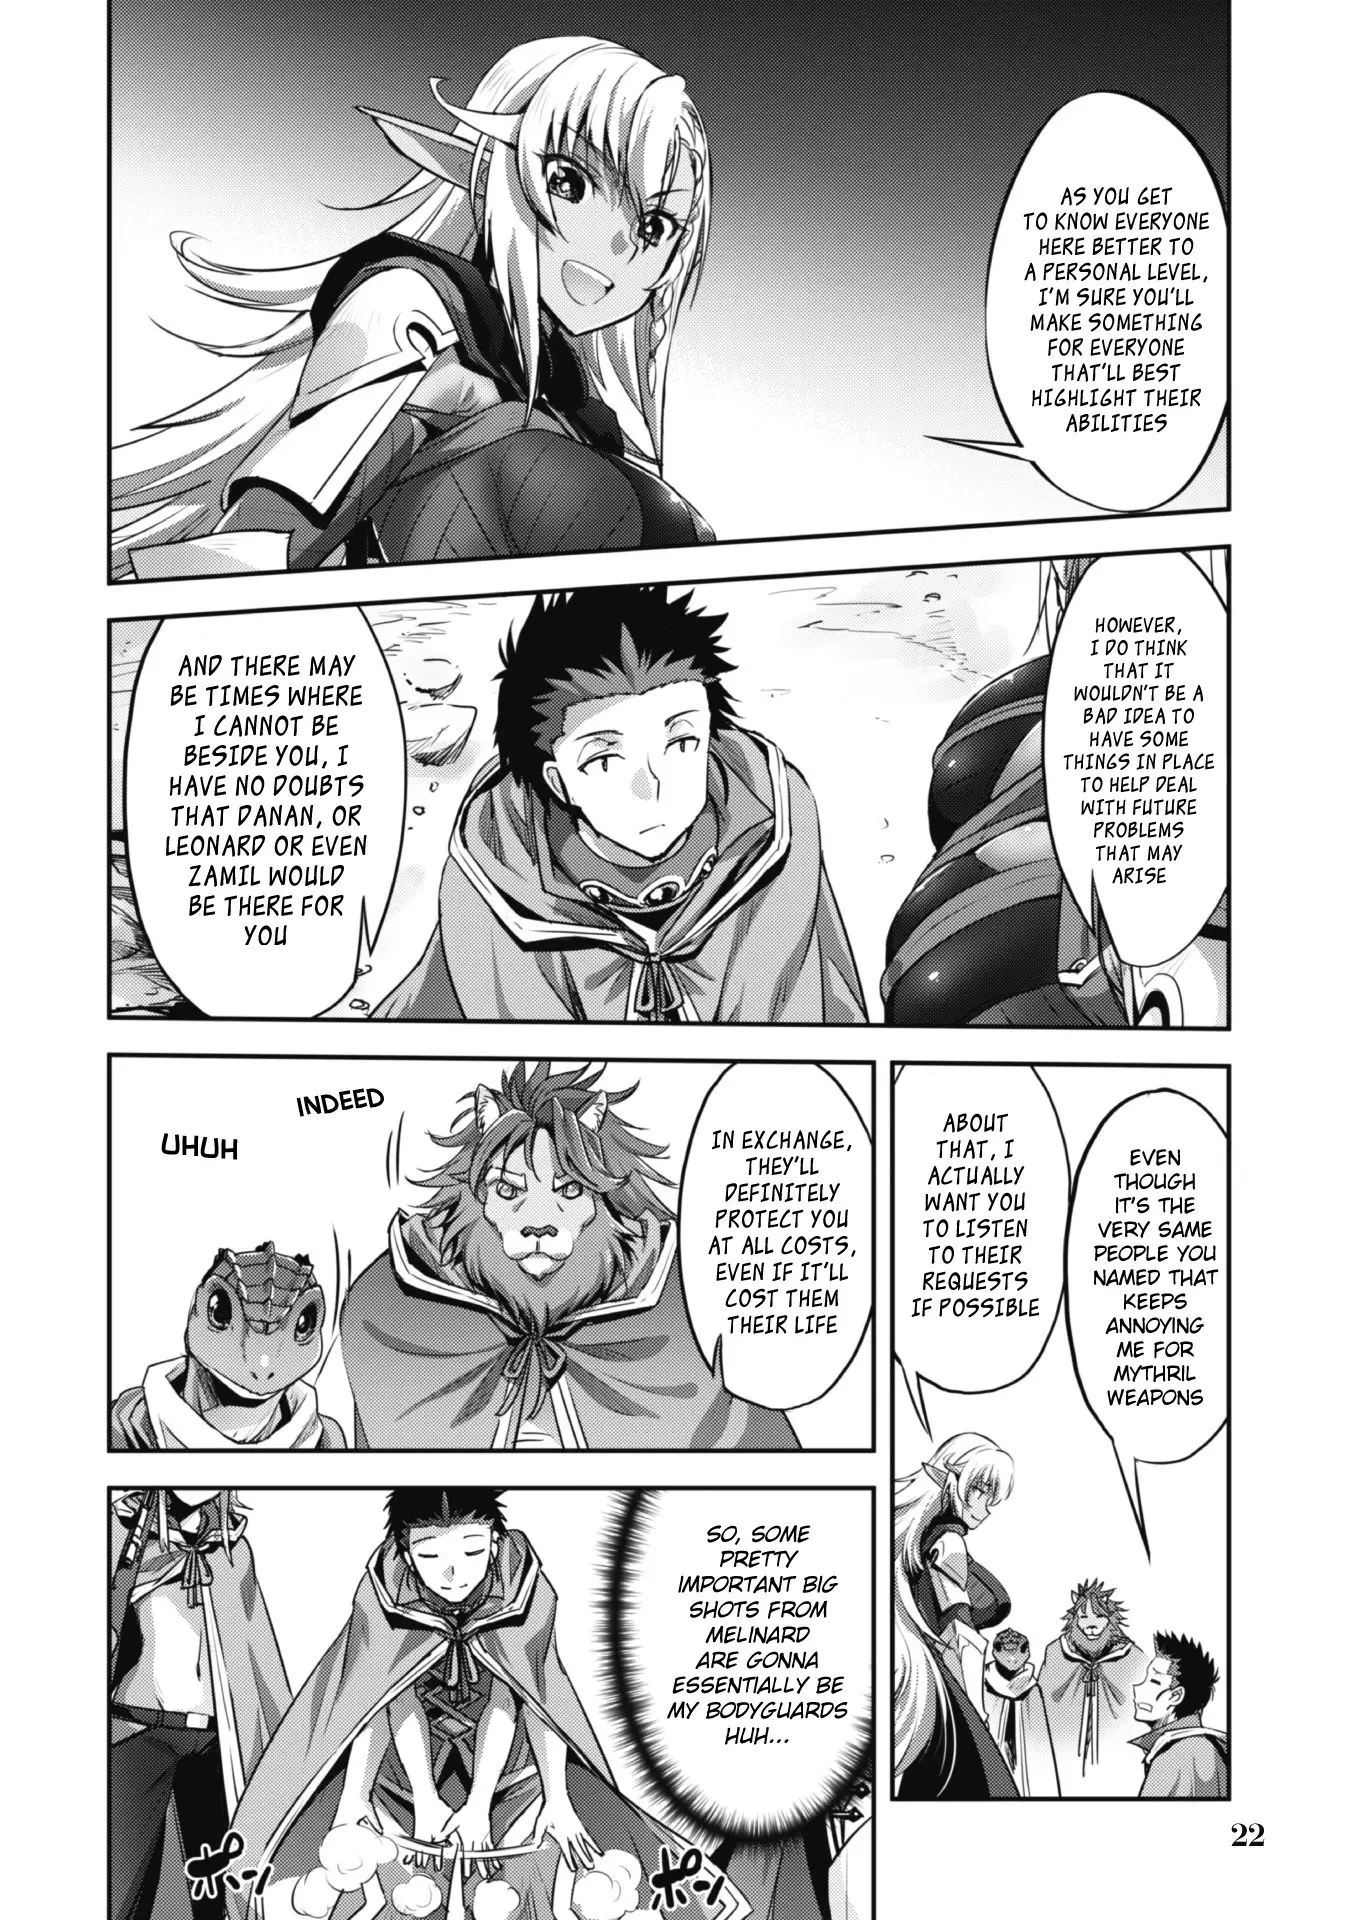 Goshujin-Sama To Yuku Isekai Survival! - 19 page 18-27cbc8f4